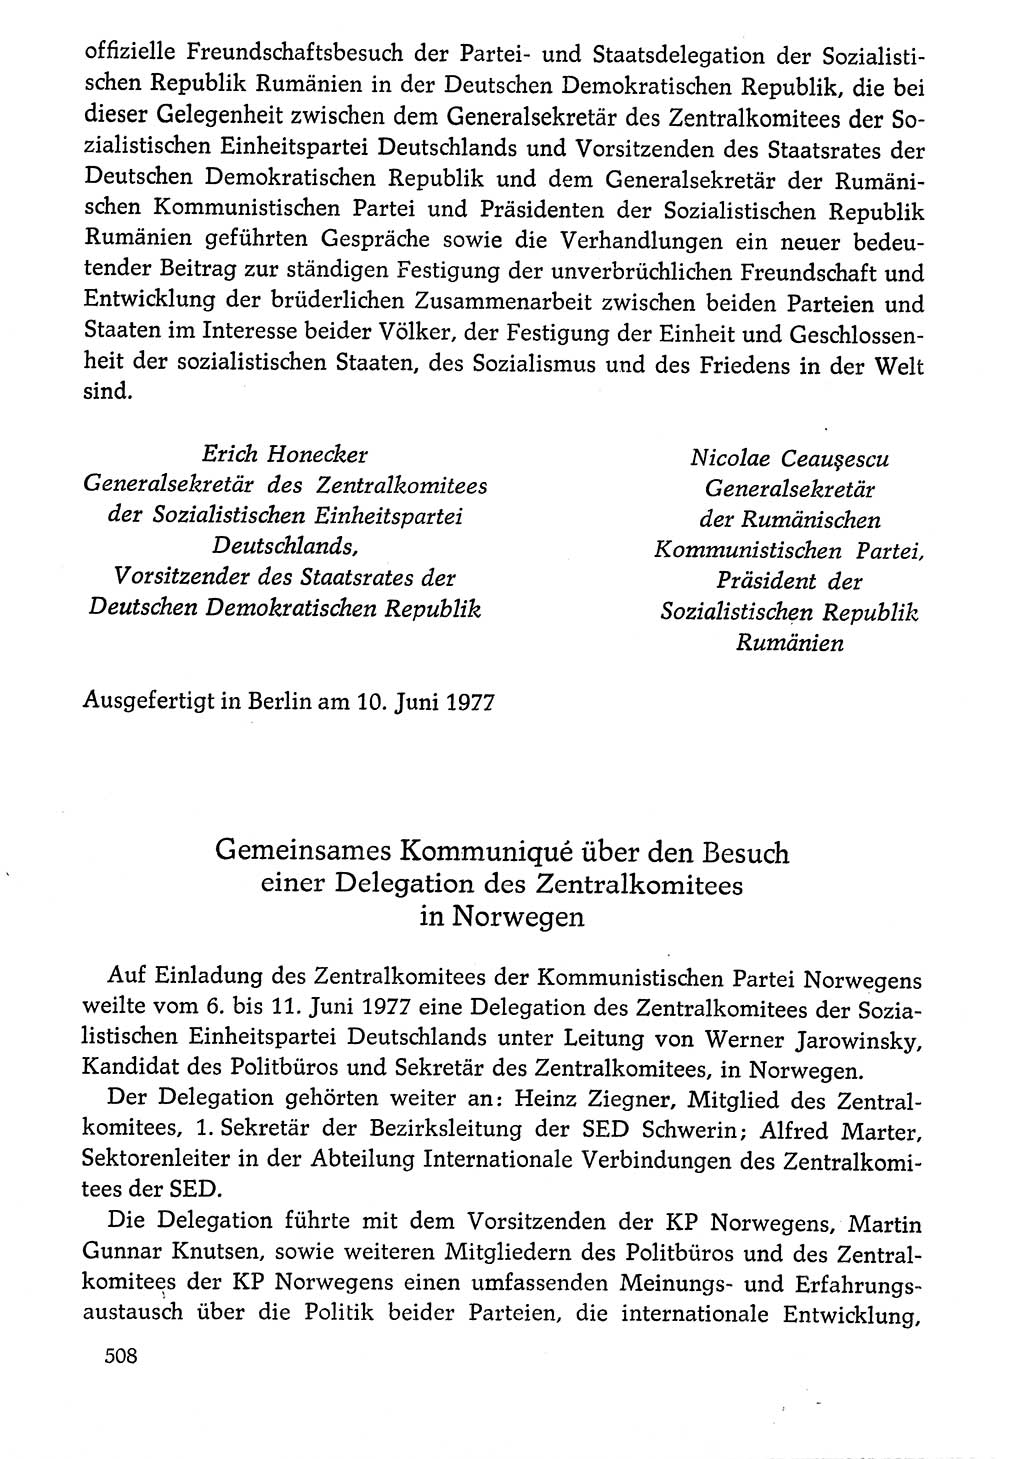 Dokumente der Sozialistischen Einheitspartei Deutschlands (SED) [Deutsche Demokratische Republik (DDR)] 1976-1977, Seite 508 (Dok. SED DDR 1976-1977, S. 508)